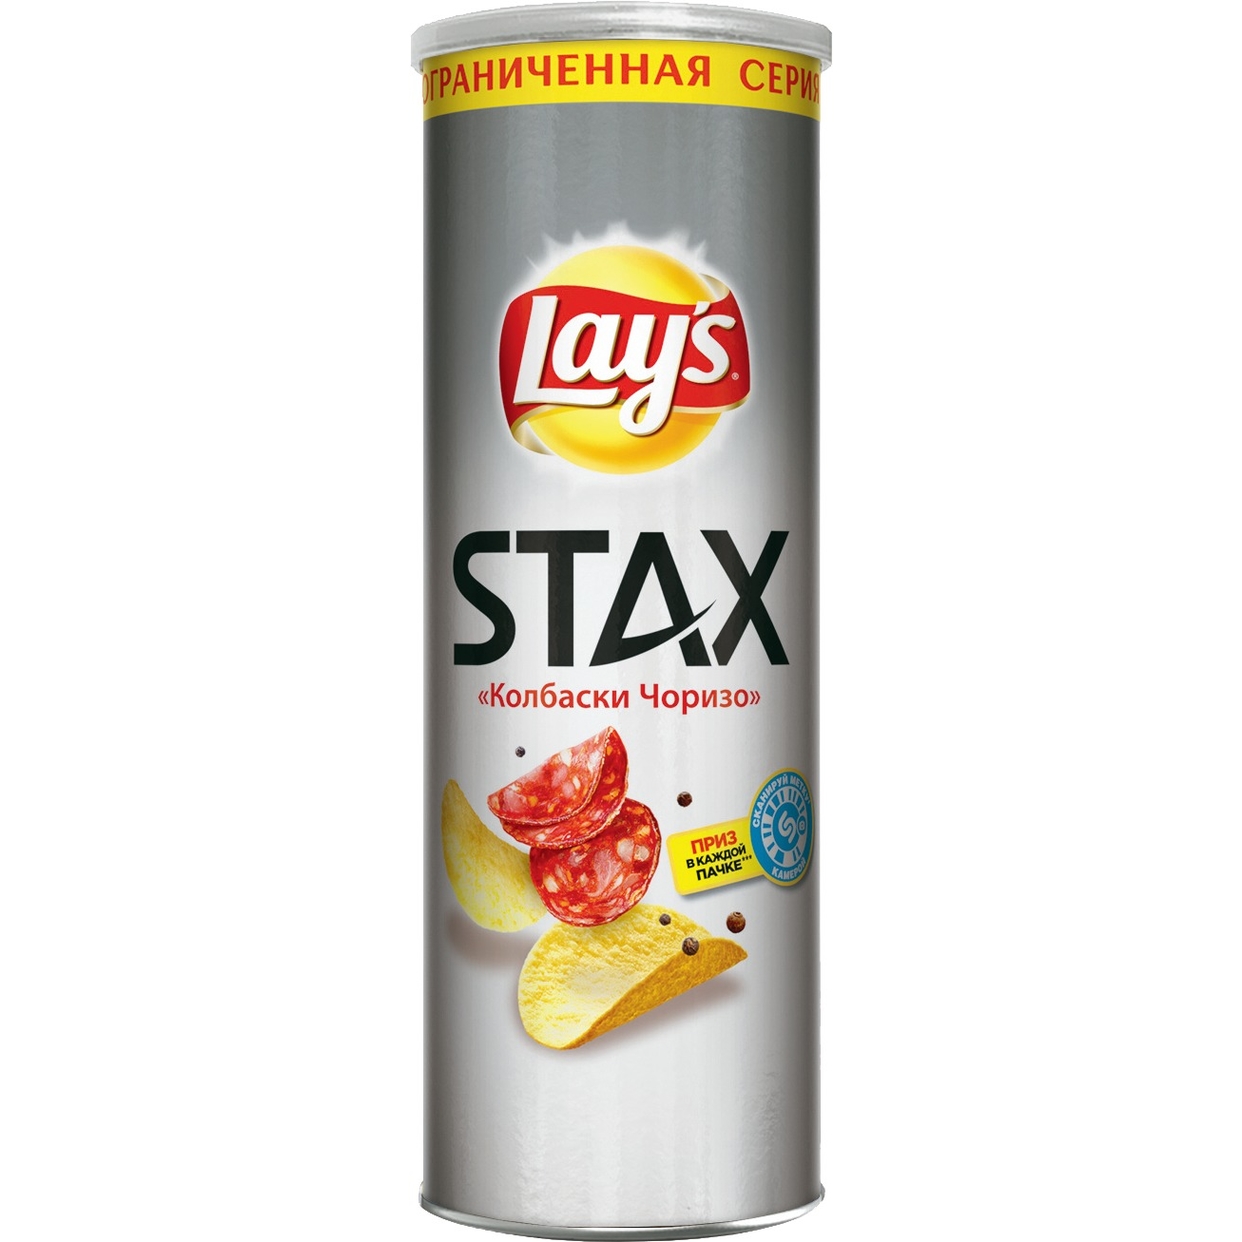 Картофельные чипсы Lay's Stax Со вкусом "Колбаски Чоризо", 165гр